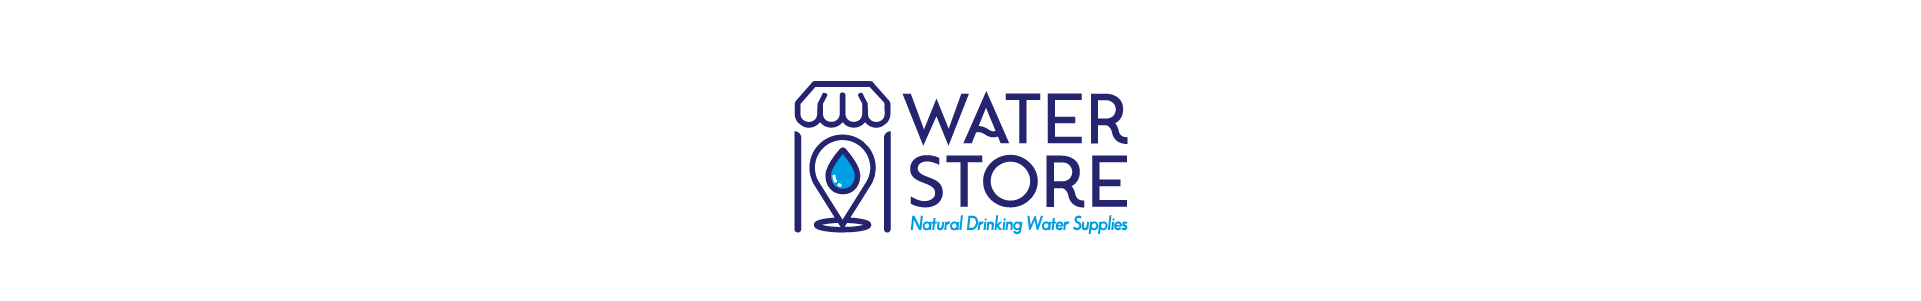 artlink advertising Branding Water store